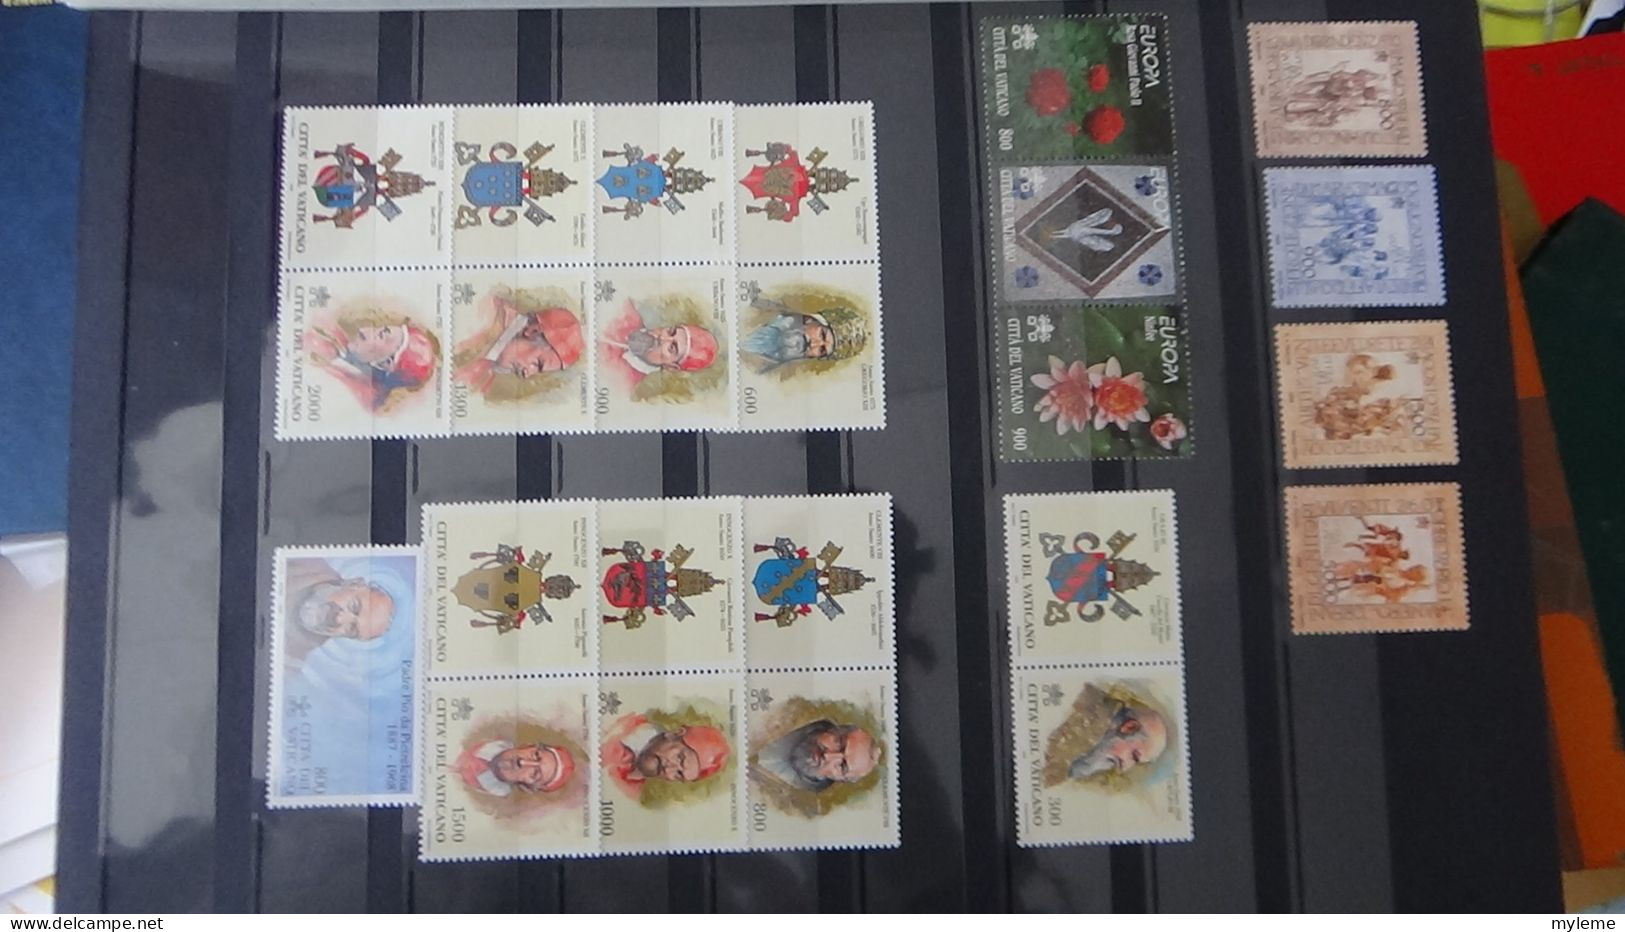 AZ140 Bel ensemble de timbres et blocs ** du Vatican.  A saisir !!!